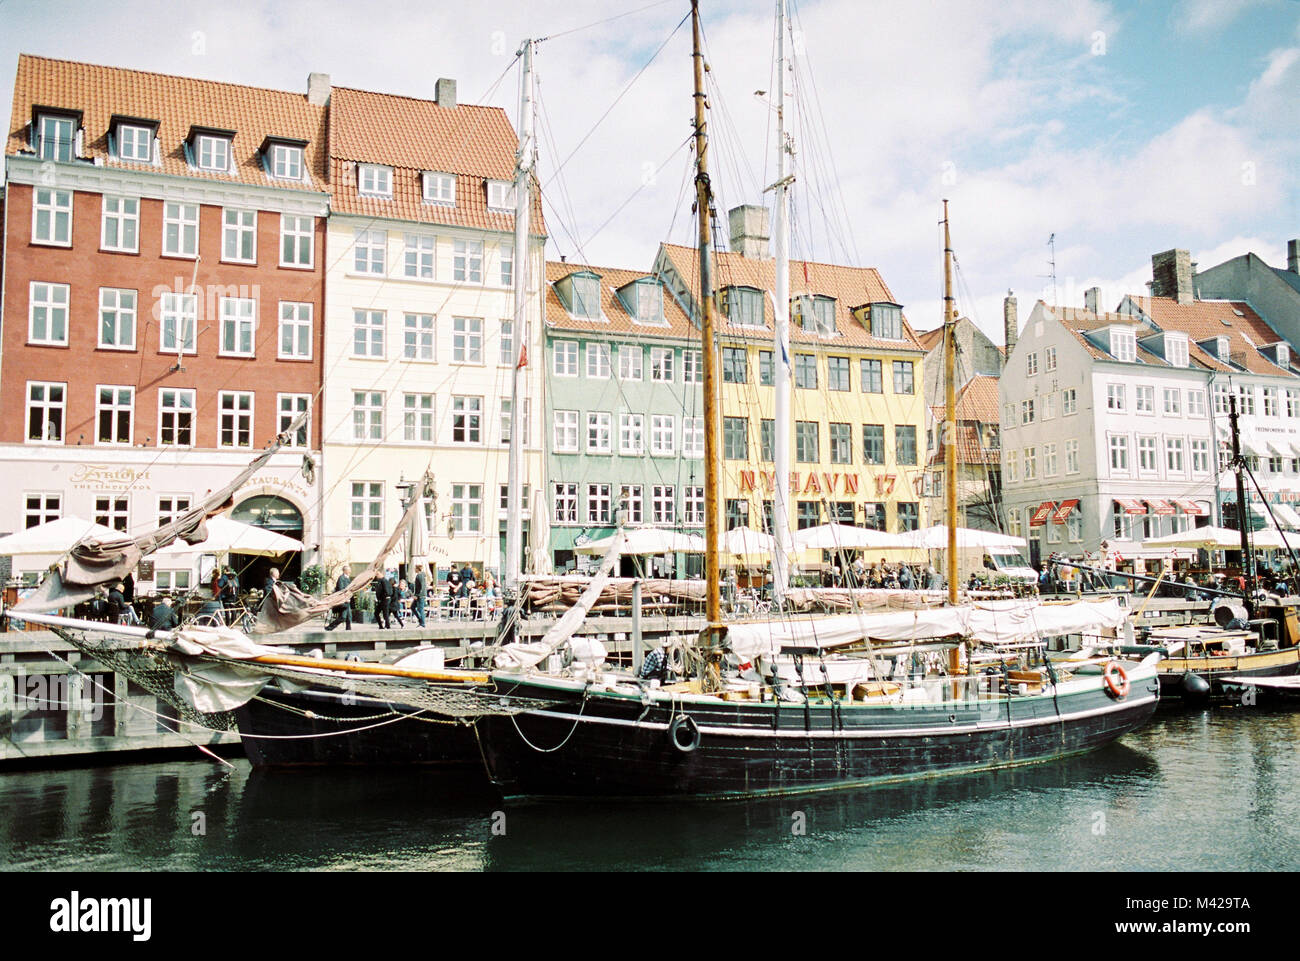 Il coloratissimo porto di Nyhavn. Famoso luogo turistico con tante barche ed edifici storici. Foto Stock